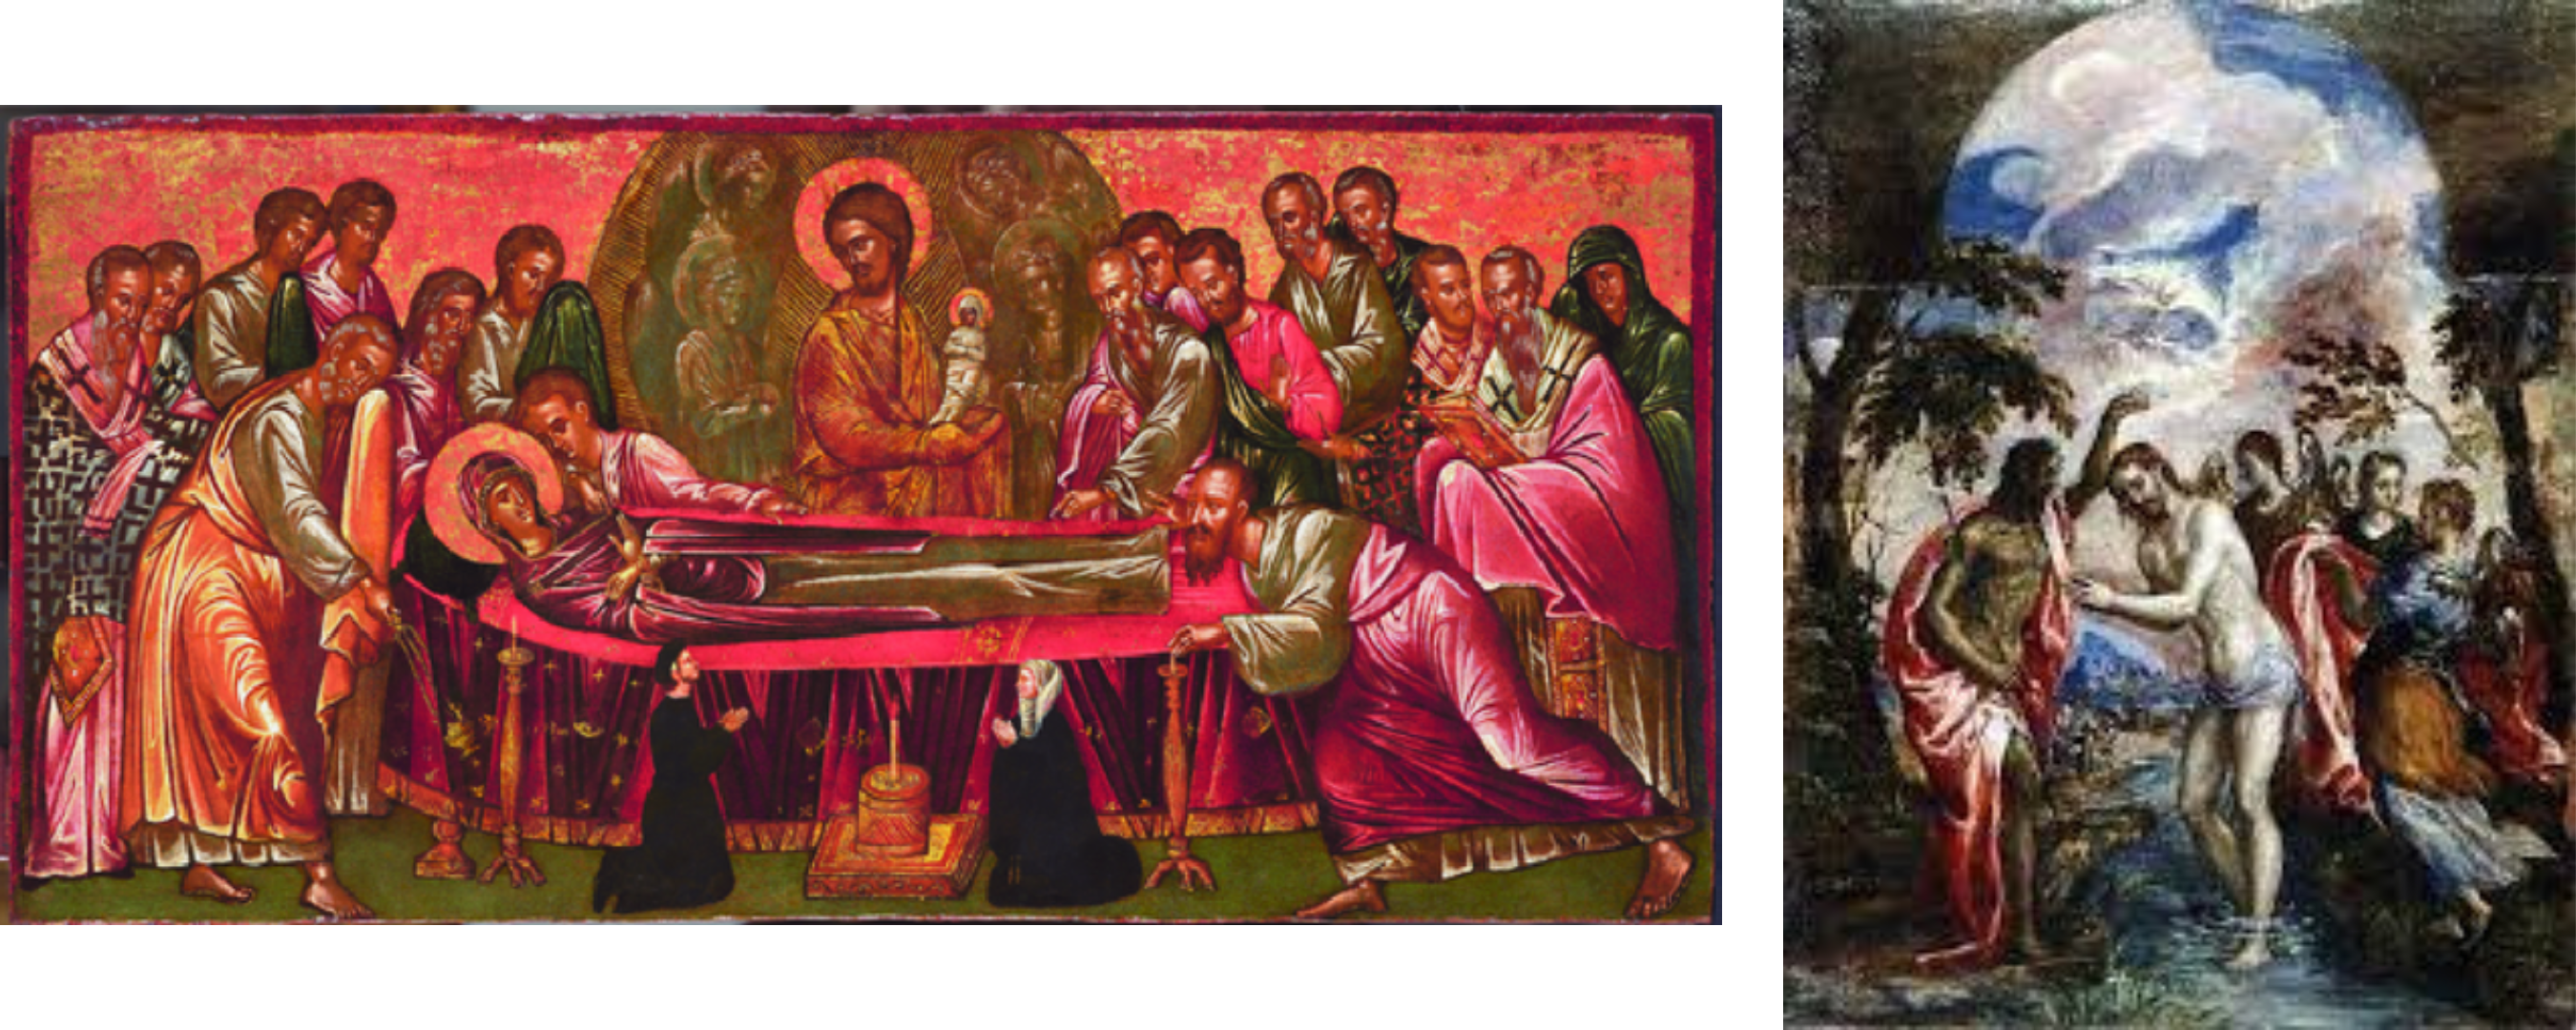 due opere di el greco affiancate: la dormizione di Maria e il battesimo di Cristo